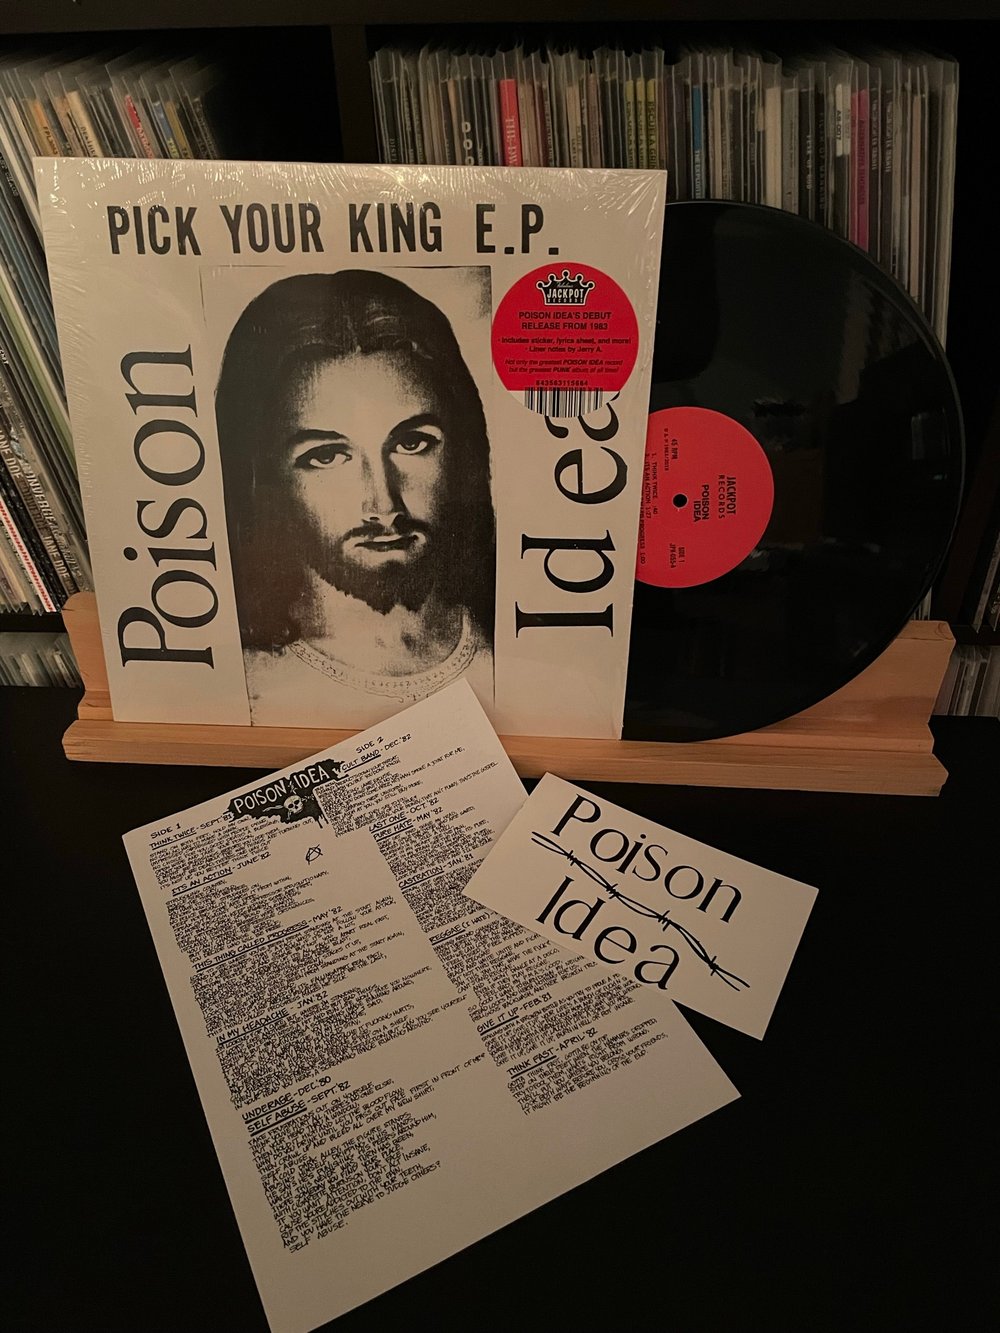 POISON IDEA "Pick Your King" LP